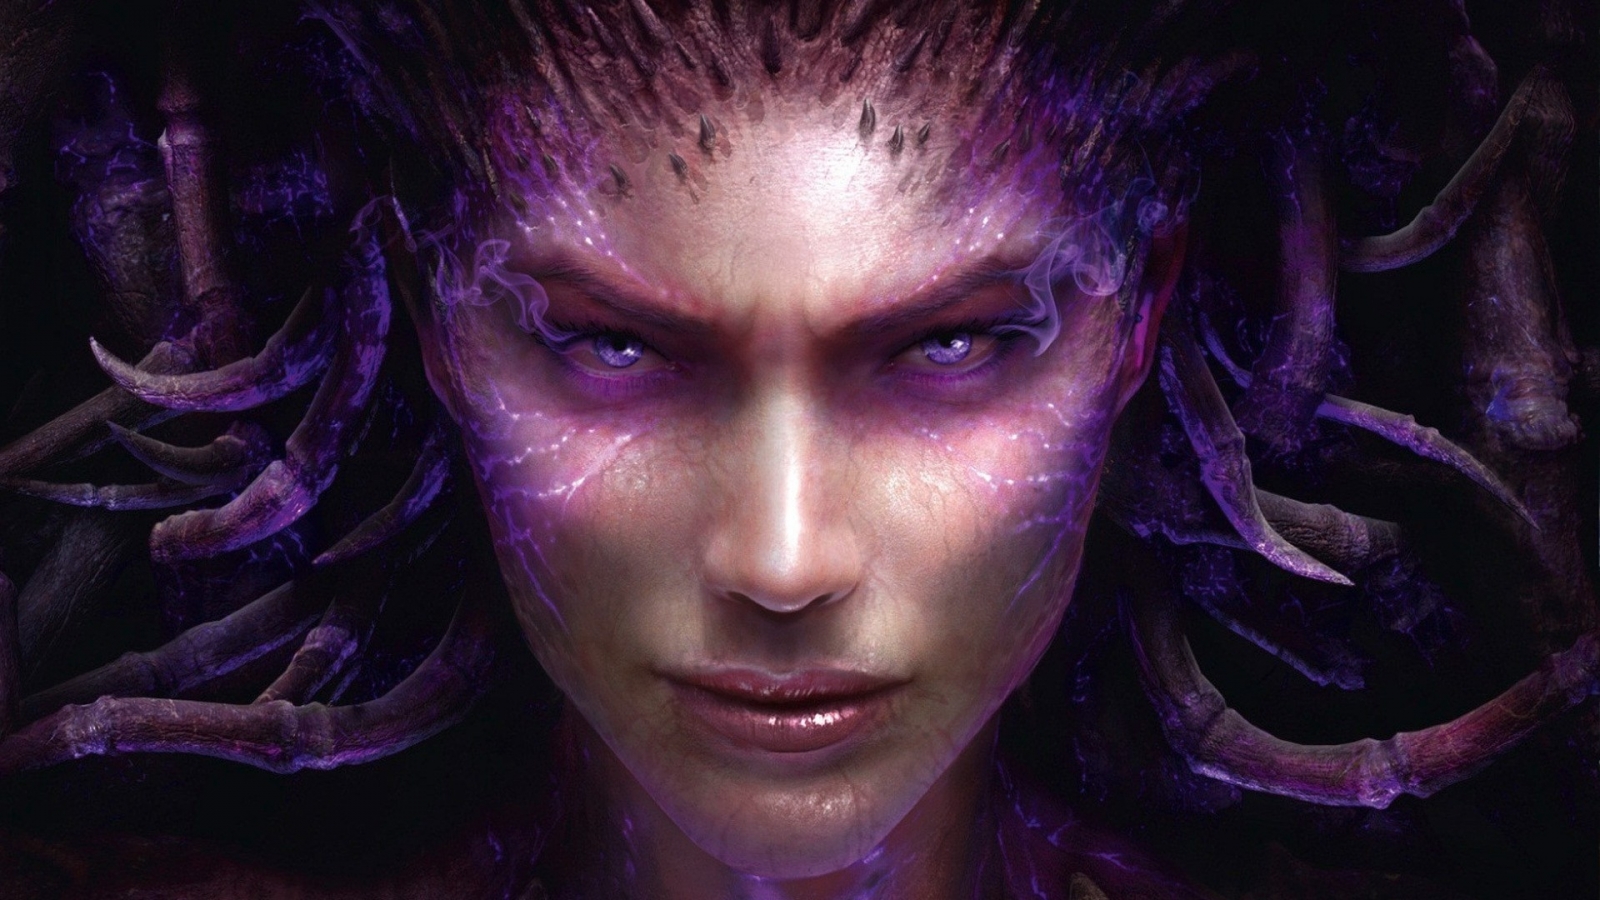 Sarah Kerrigan StarCraft 2 for 1600 x 900 HDTV resolution